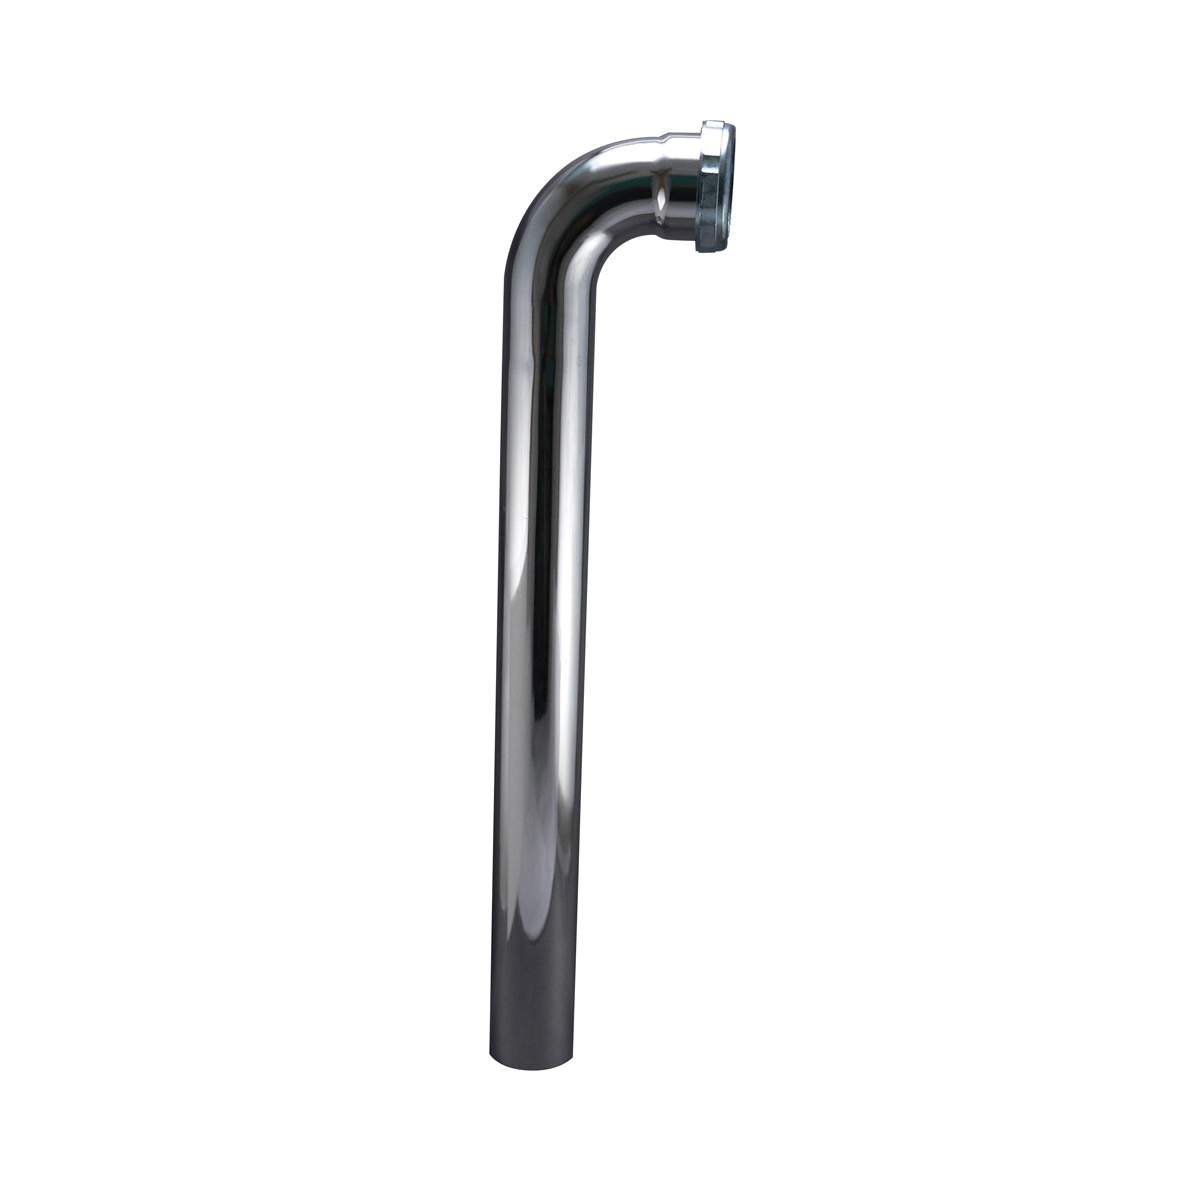 PlumbPak® 548SN Waste Arm, 1-1/2 in Nominal, 17 ga, Brass, Polished Chrome, Import